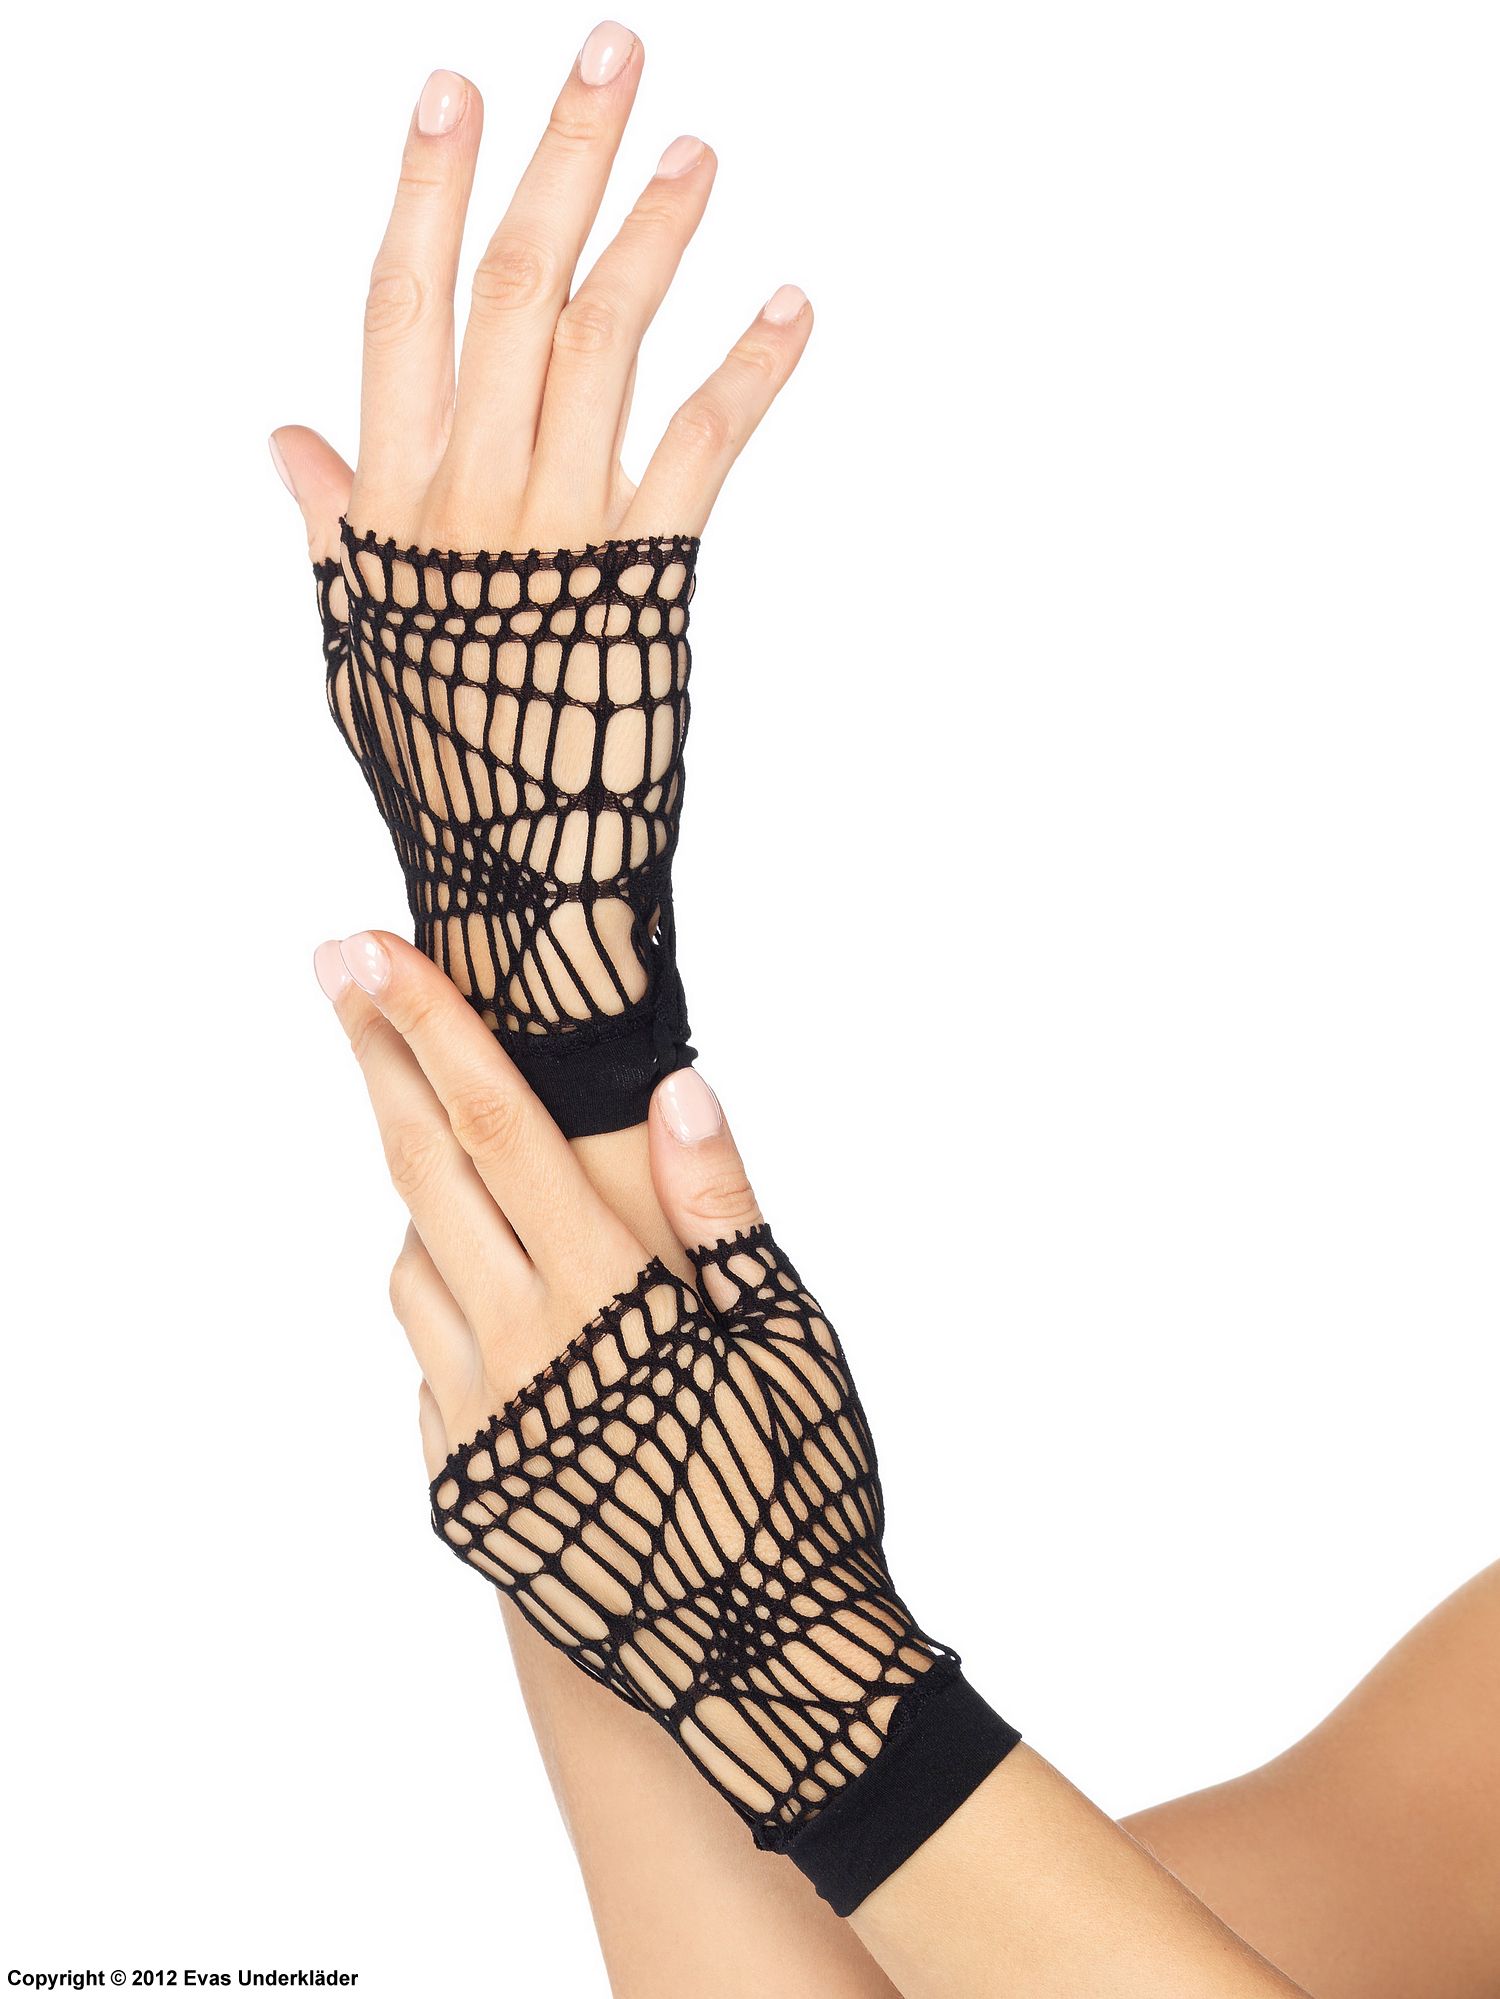 Fingerless gloves, net